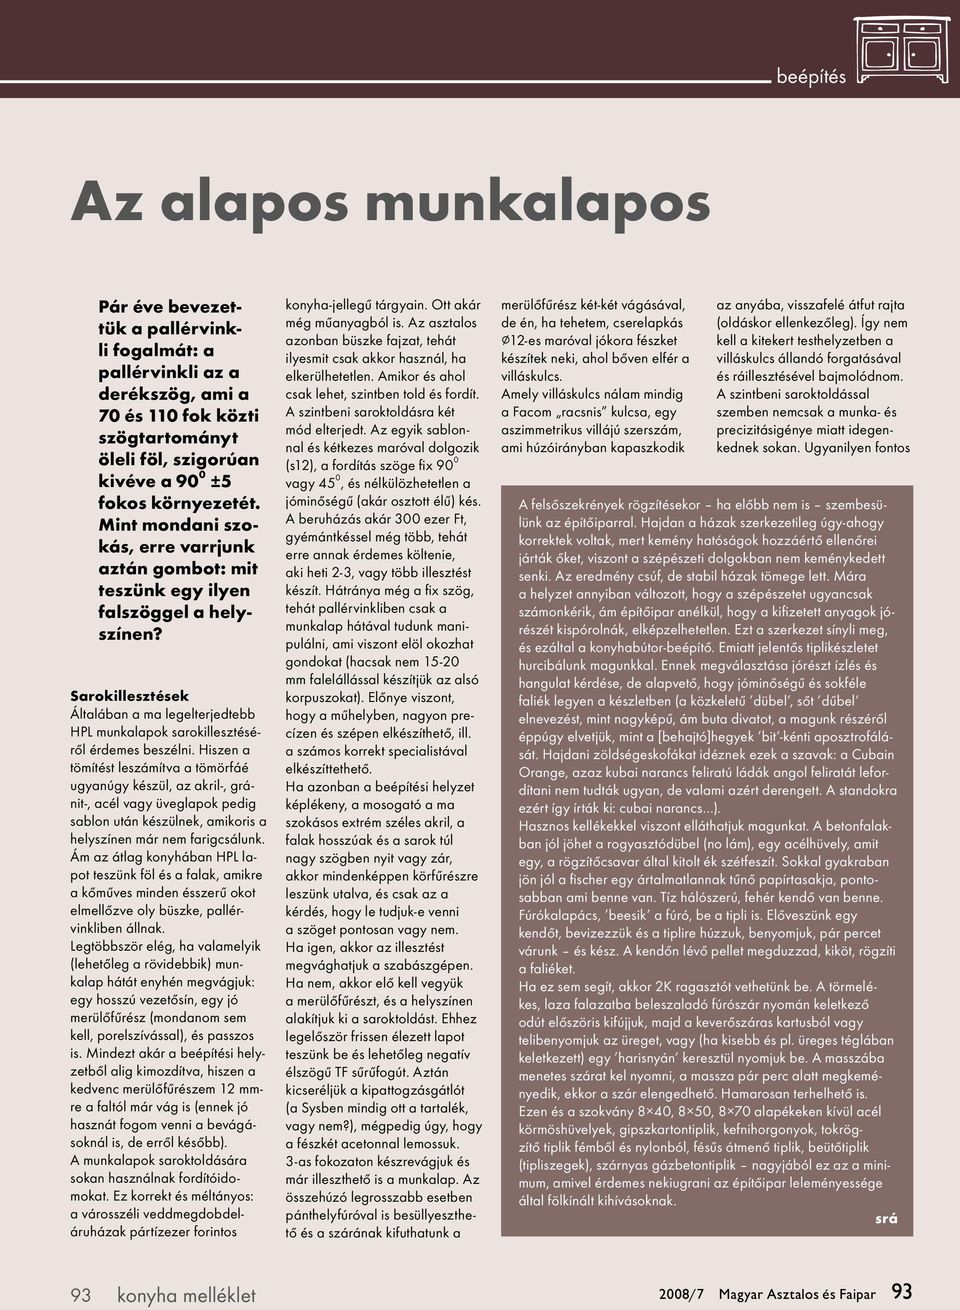 A Magyar Asztalos és Faipar melléklete. Tartalom - PDF Free Download